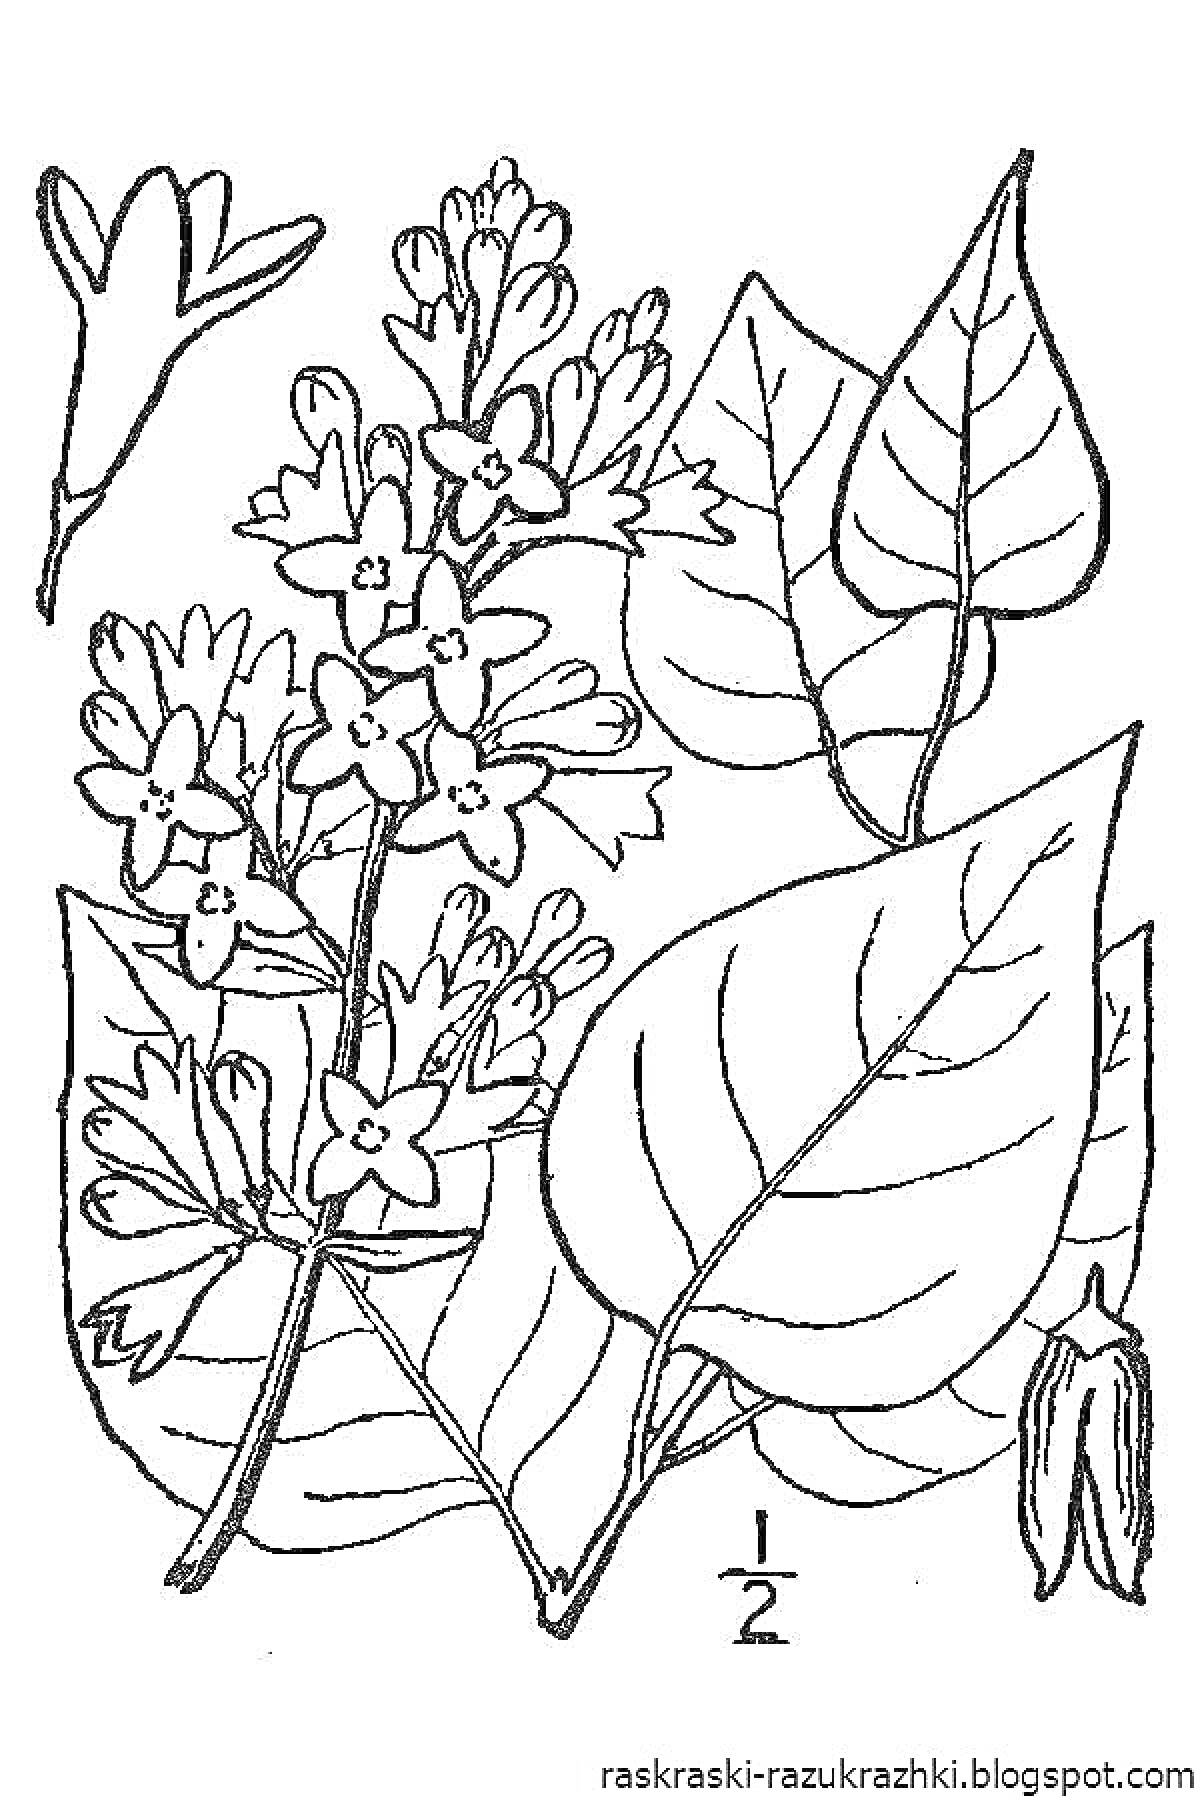 Ветвь сирени с цветками и листьями, два отдельных листа